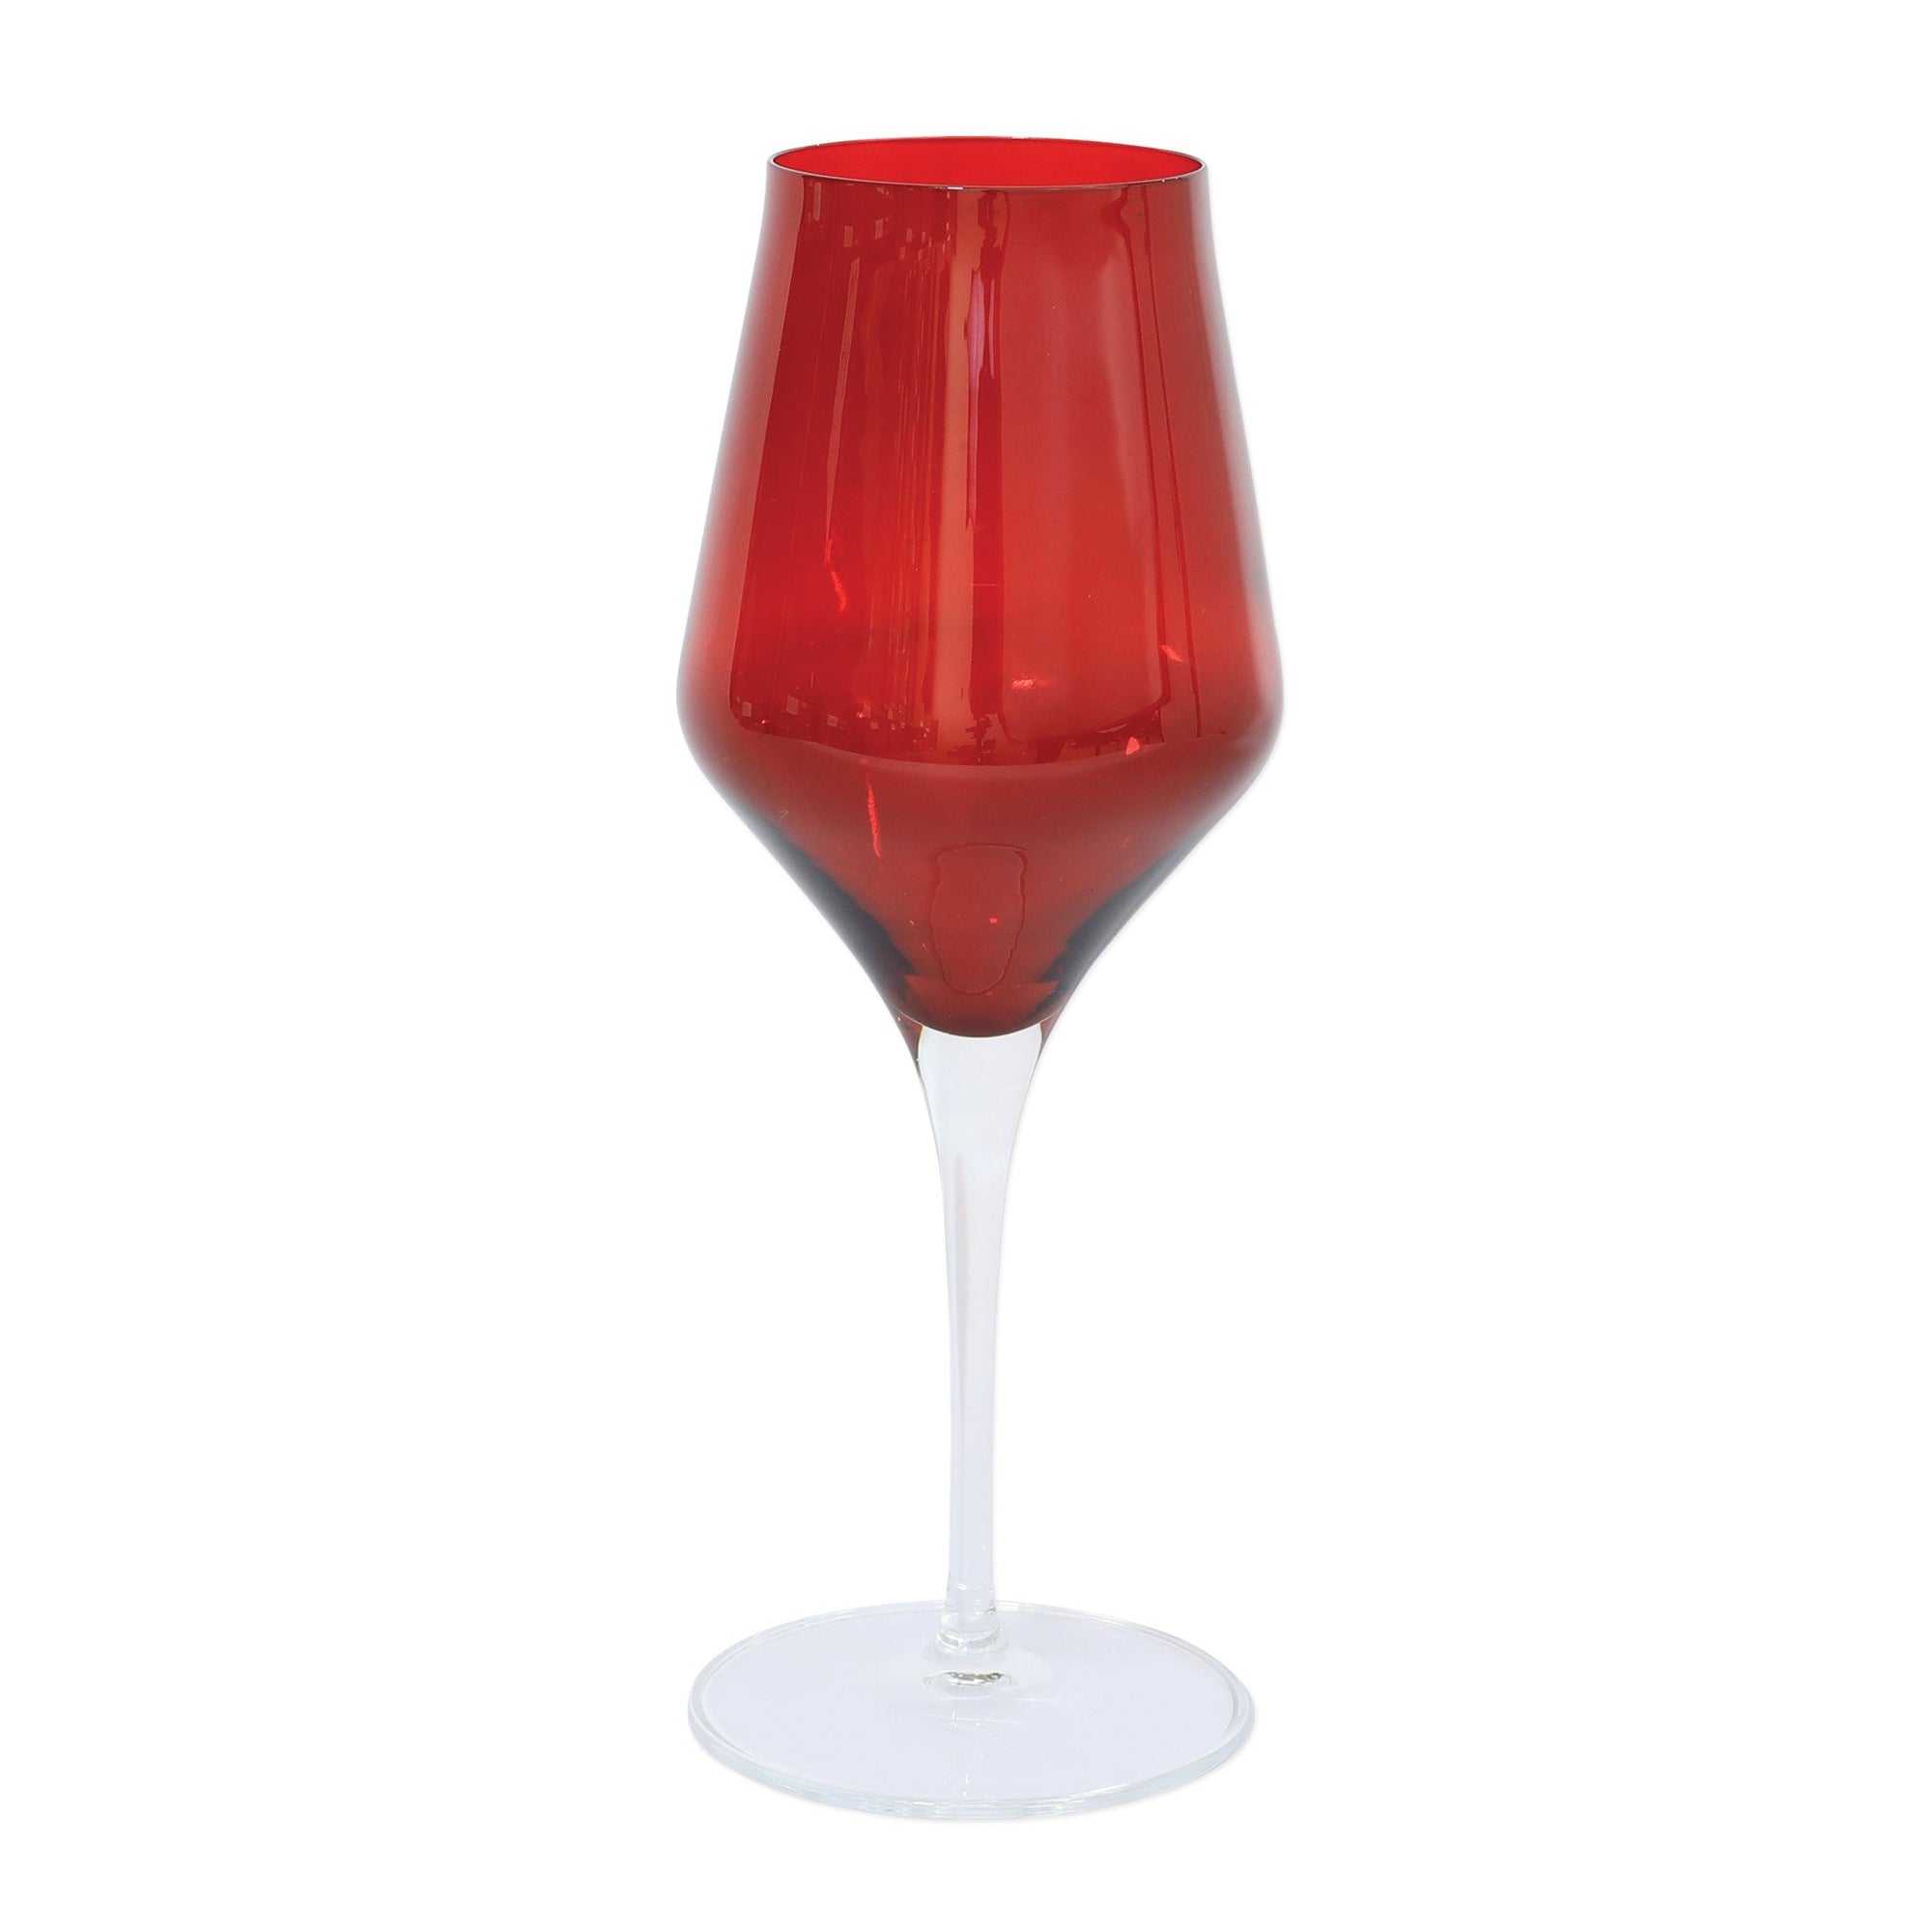 VIETRI: Contessa Red Water Glass - Artistica.com